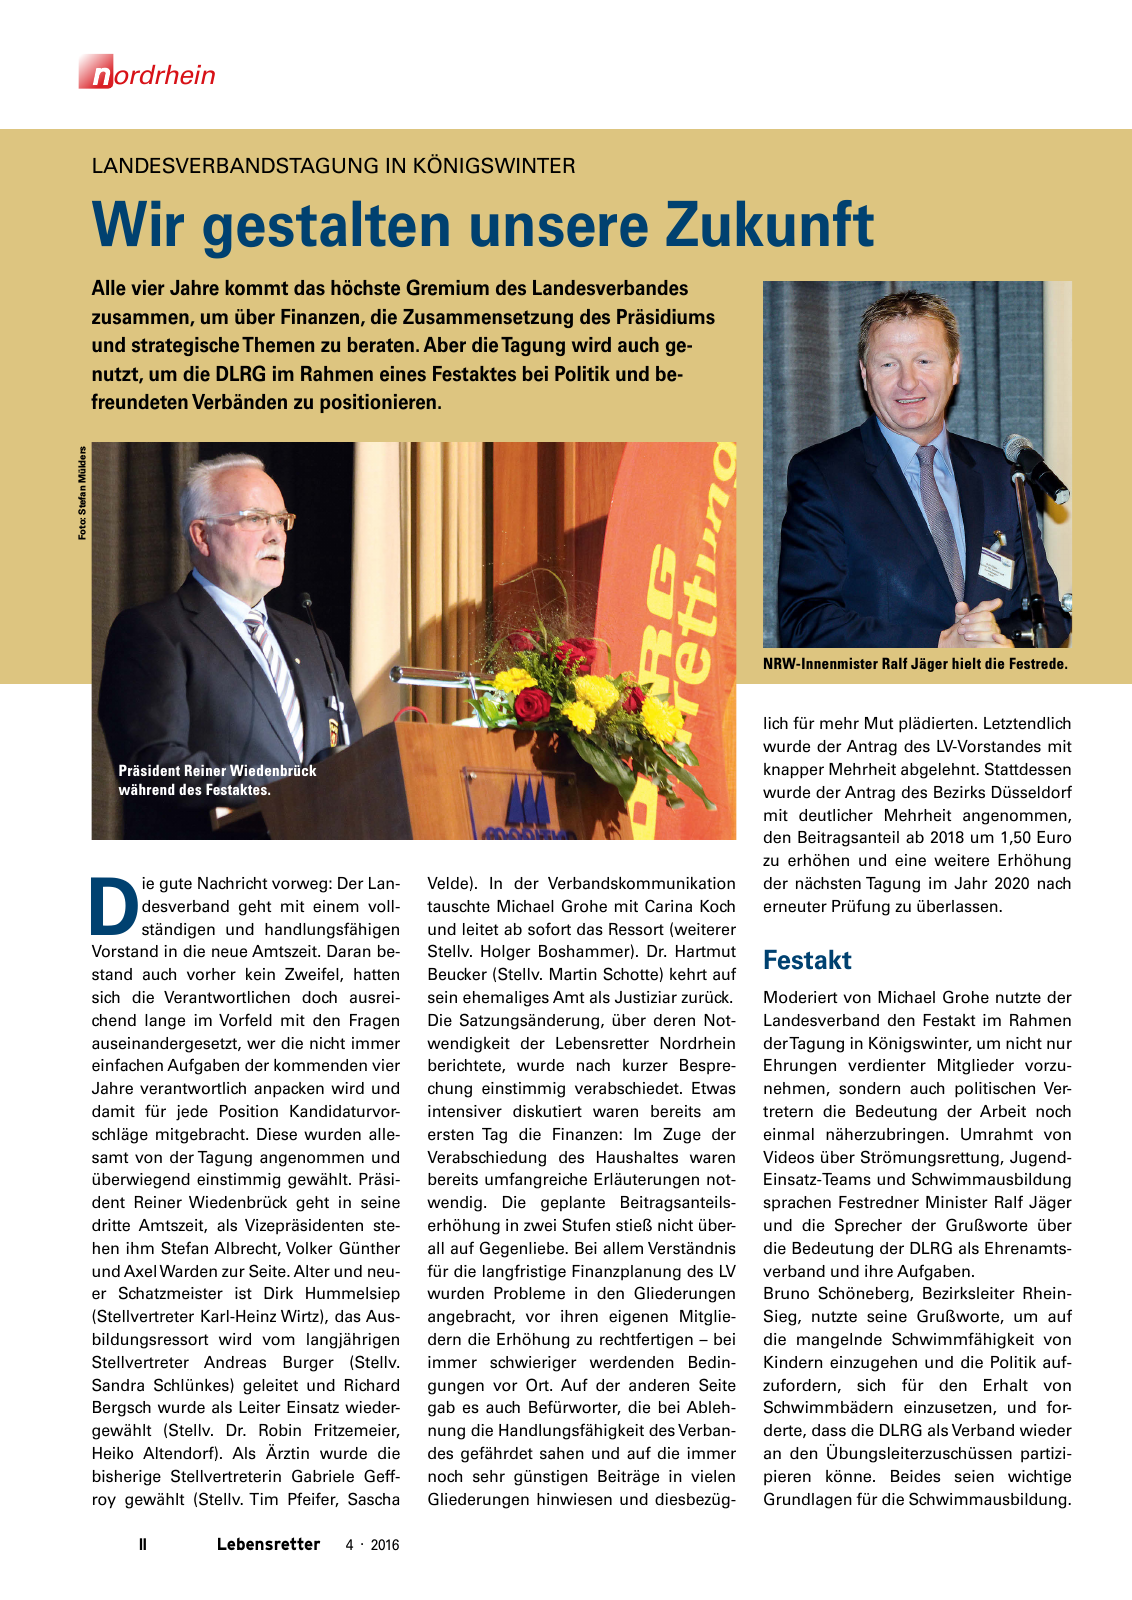 Vorschau Lebensretter 4/2016 - Regionalausgabe Nordrhein Seite 4